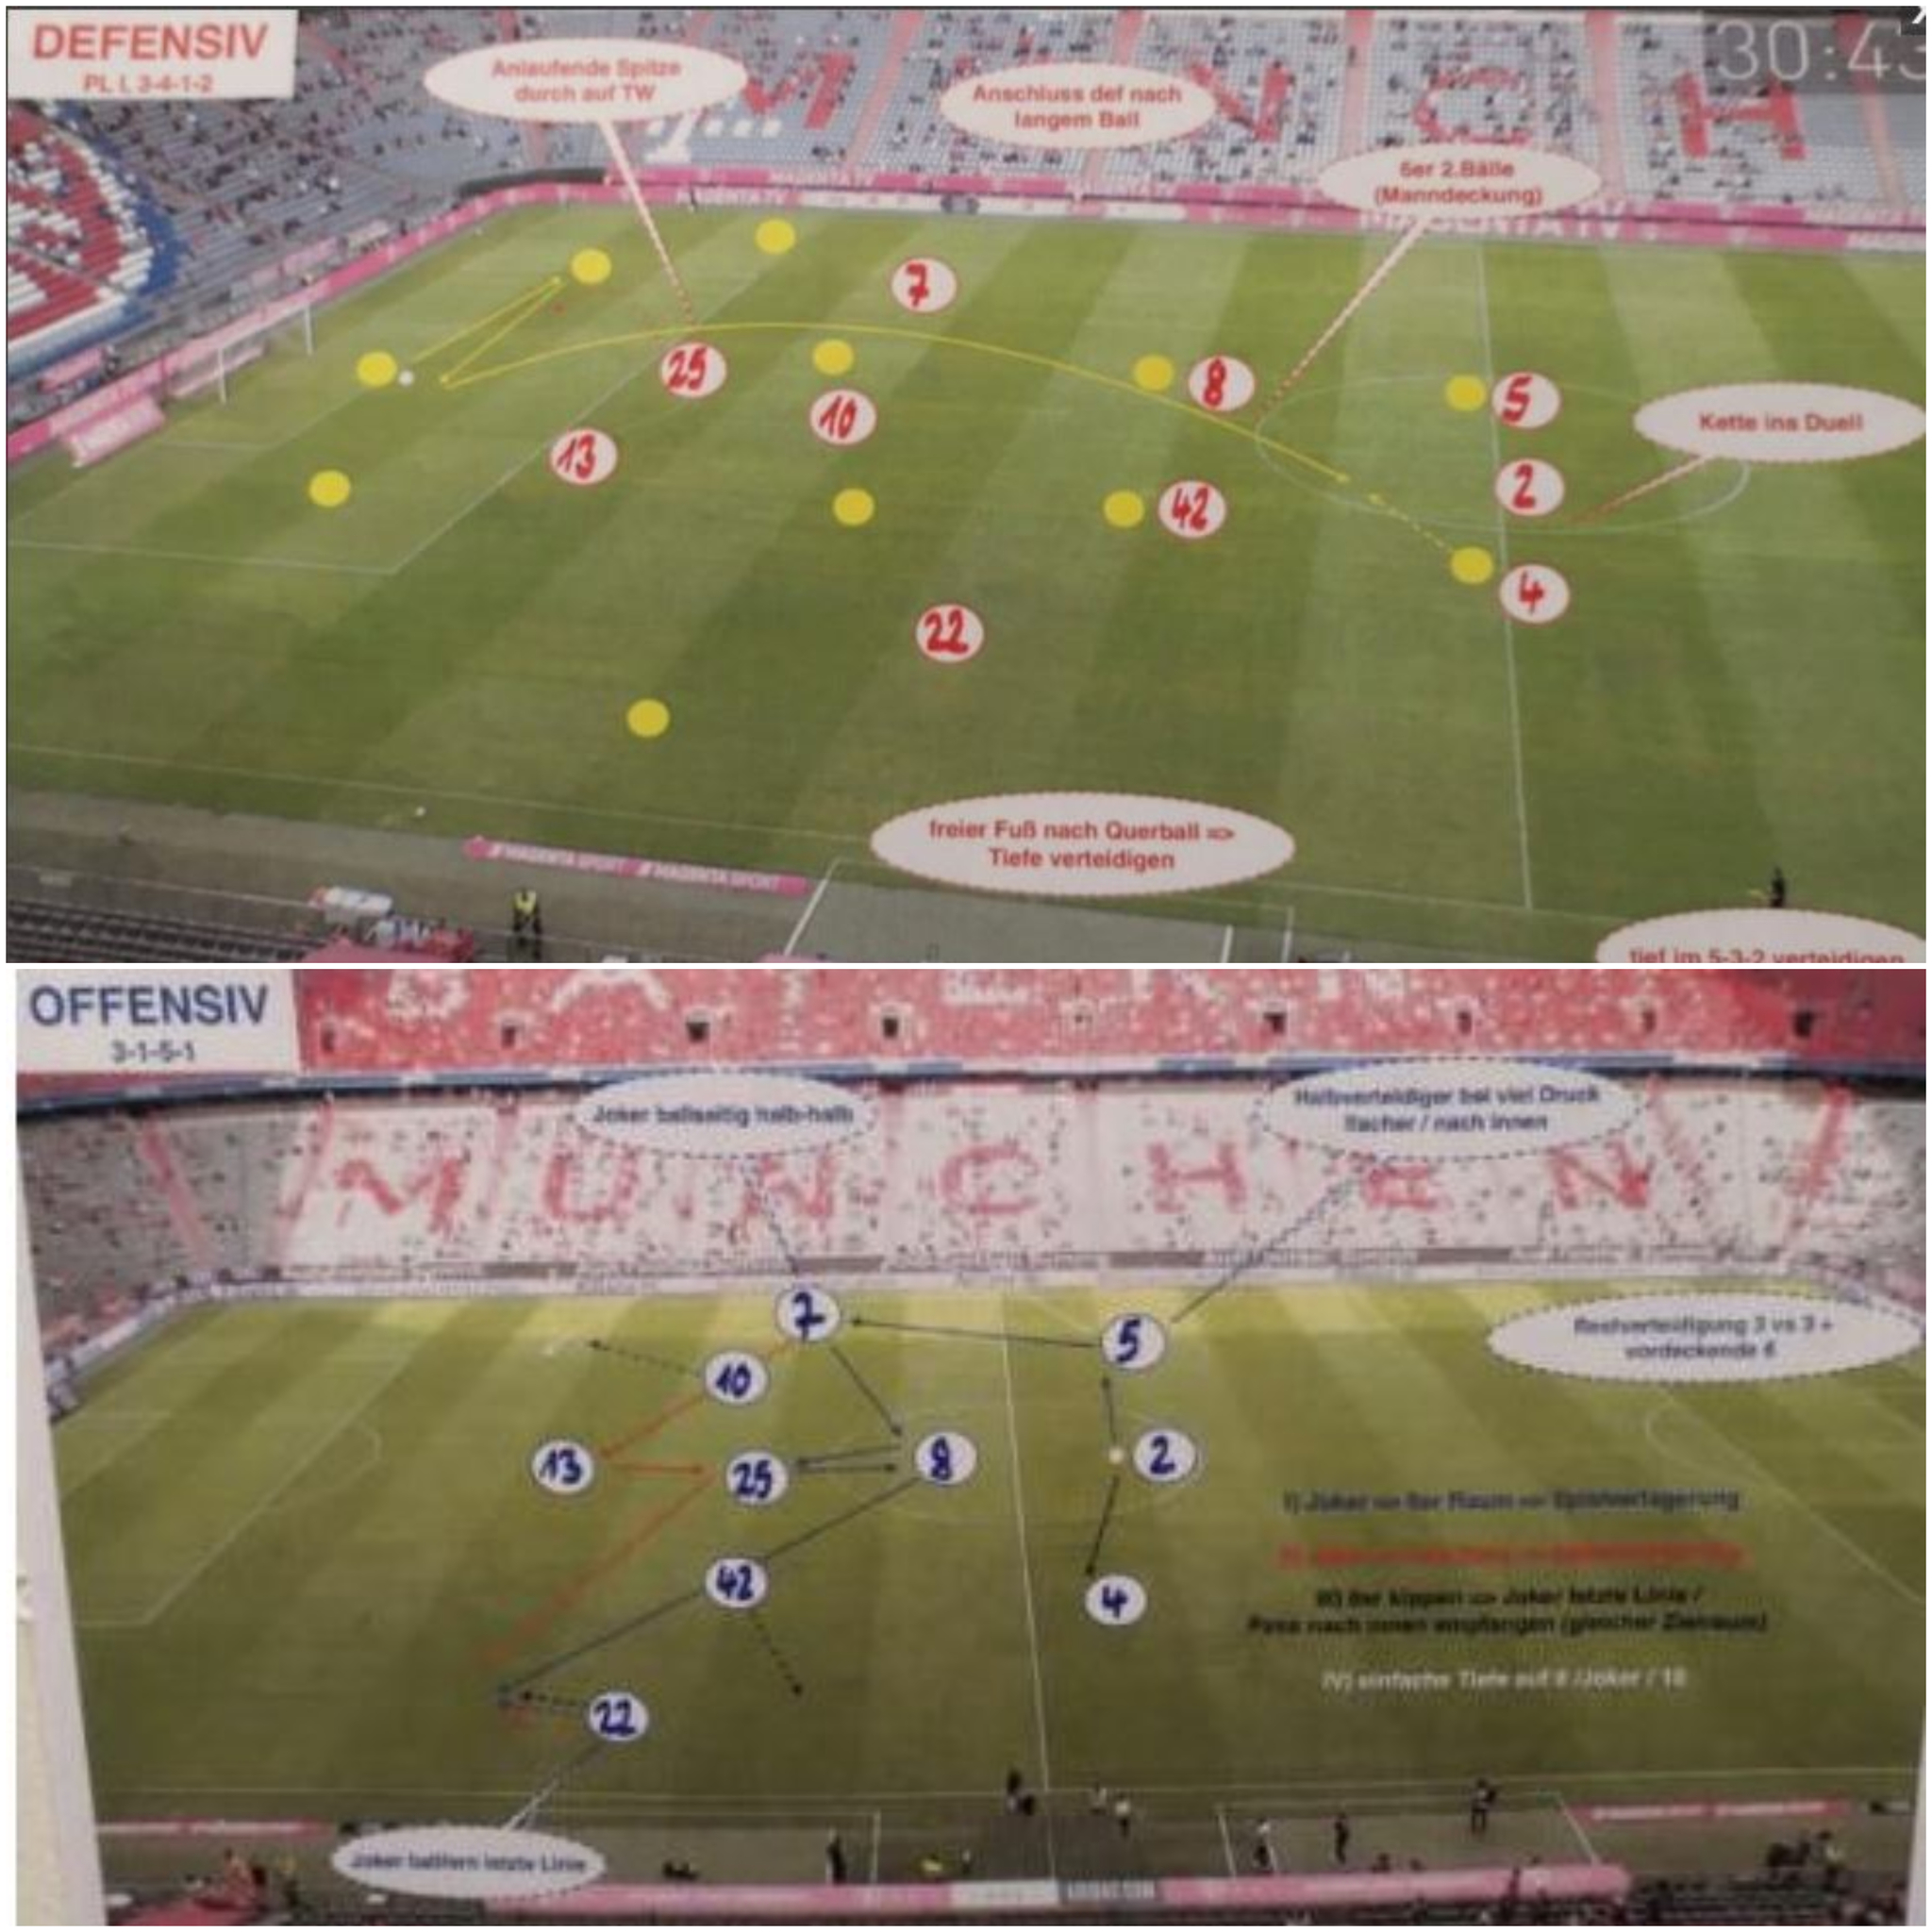 Bayern / Publication des plans tactiques de Nagelsmann dans les médias : Le coach parle d'unetaupe